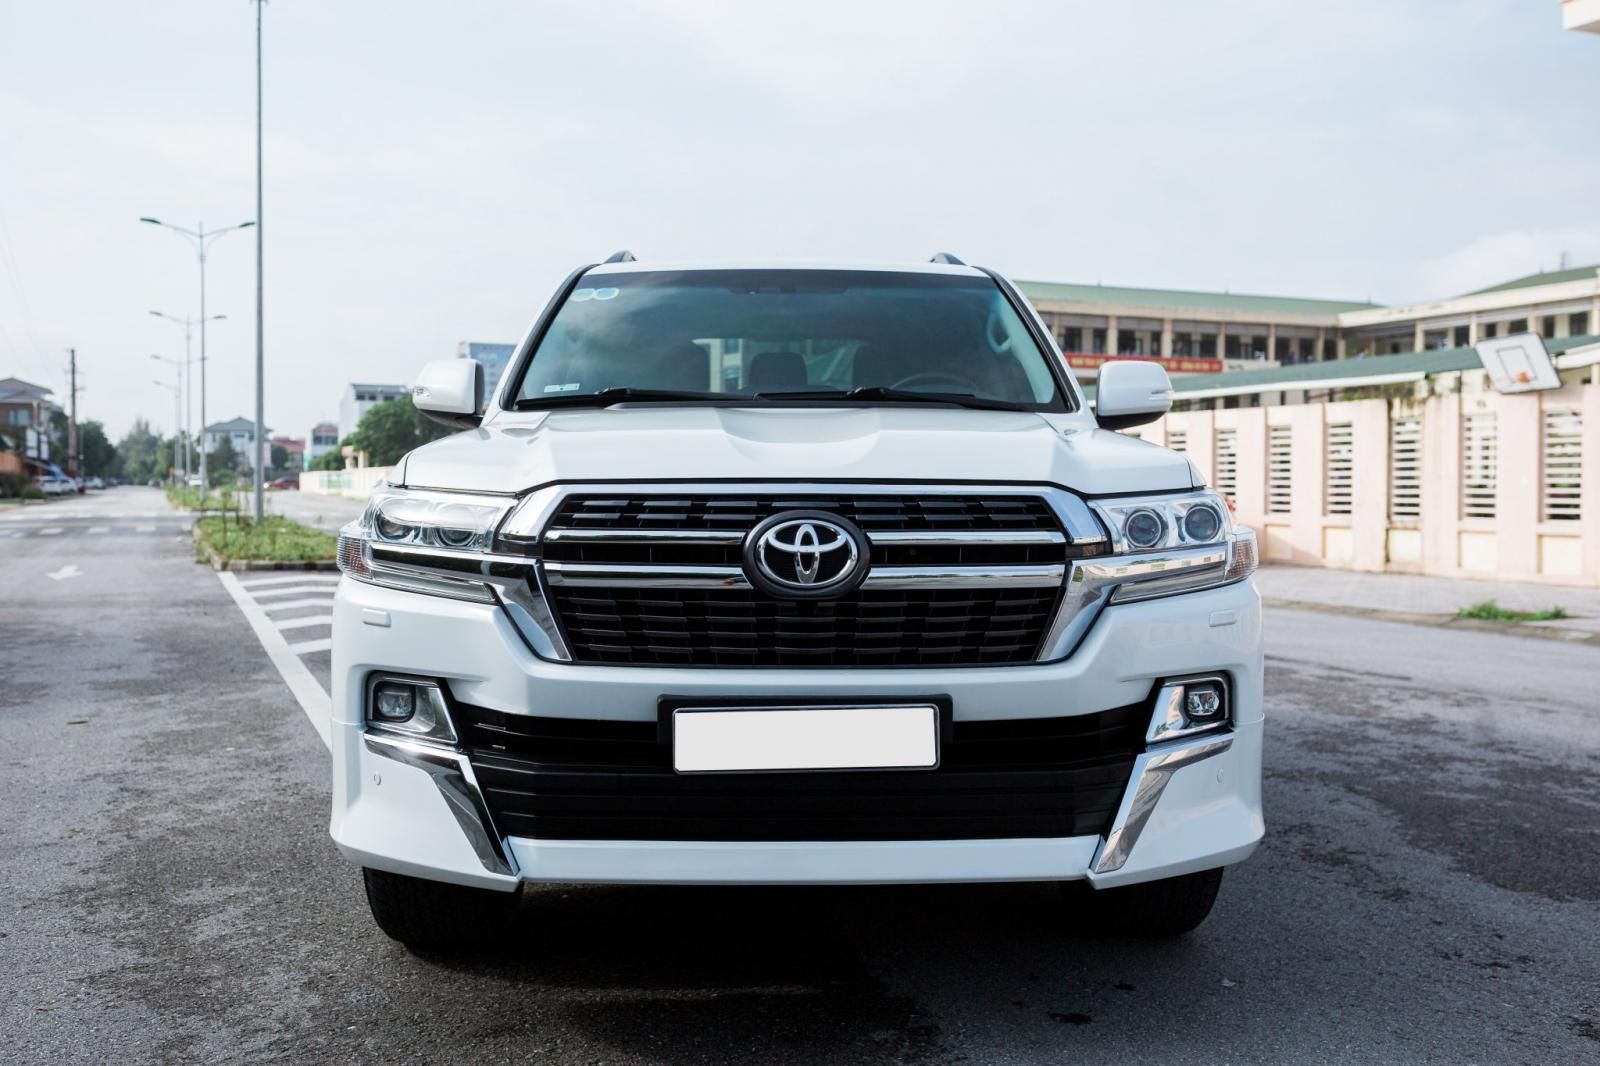 Hàng hiếm Toyota Land Cruiser từ Trung Đông giá gần 6 tỷ đồng tại Hà Nội